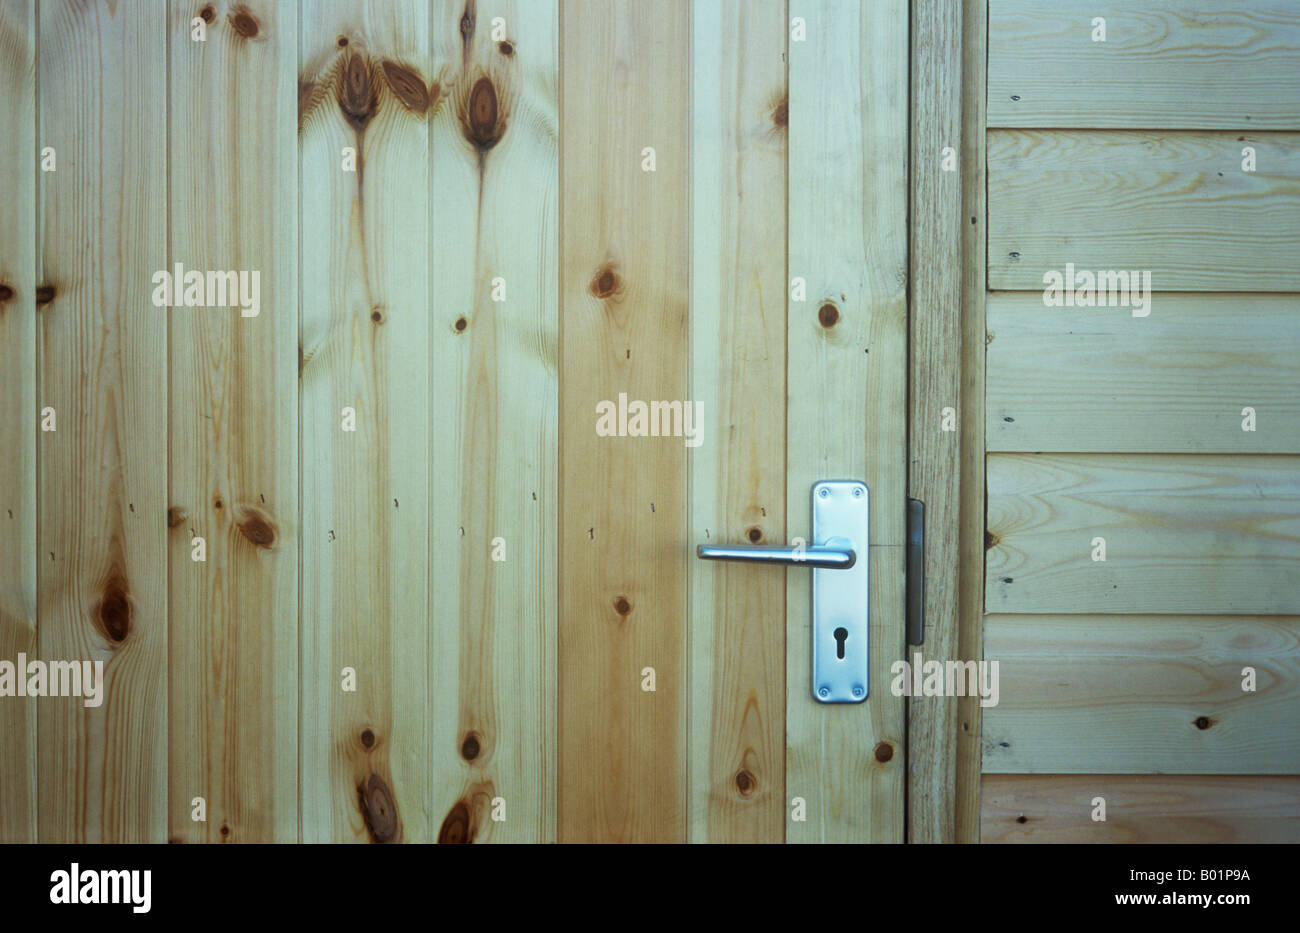 Détail de porte et mur de cabane construite avec des planches en bois lisse non colorées avec de nombreux noeuds et poignée de porte en aluminium Banque D'Images